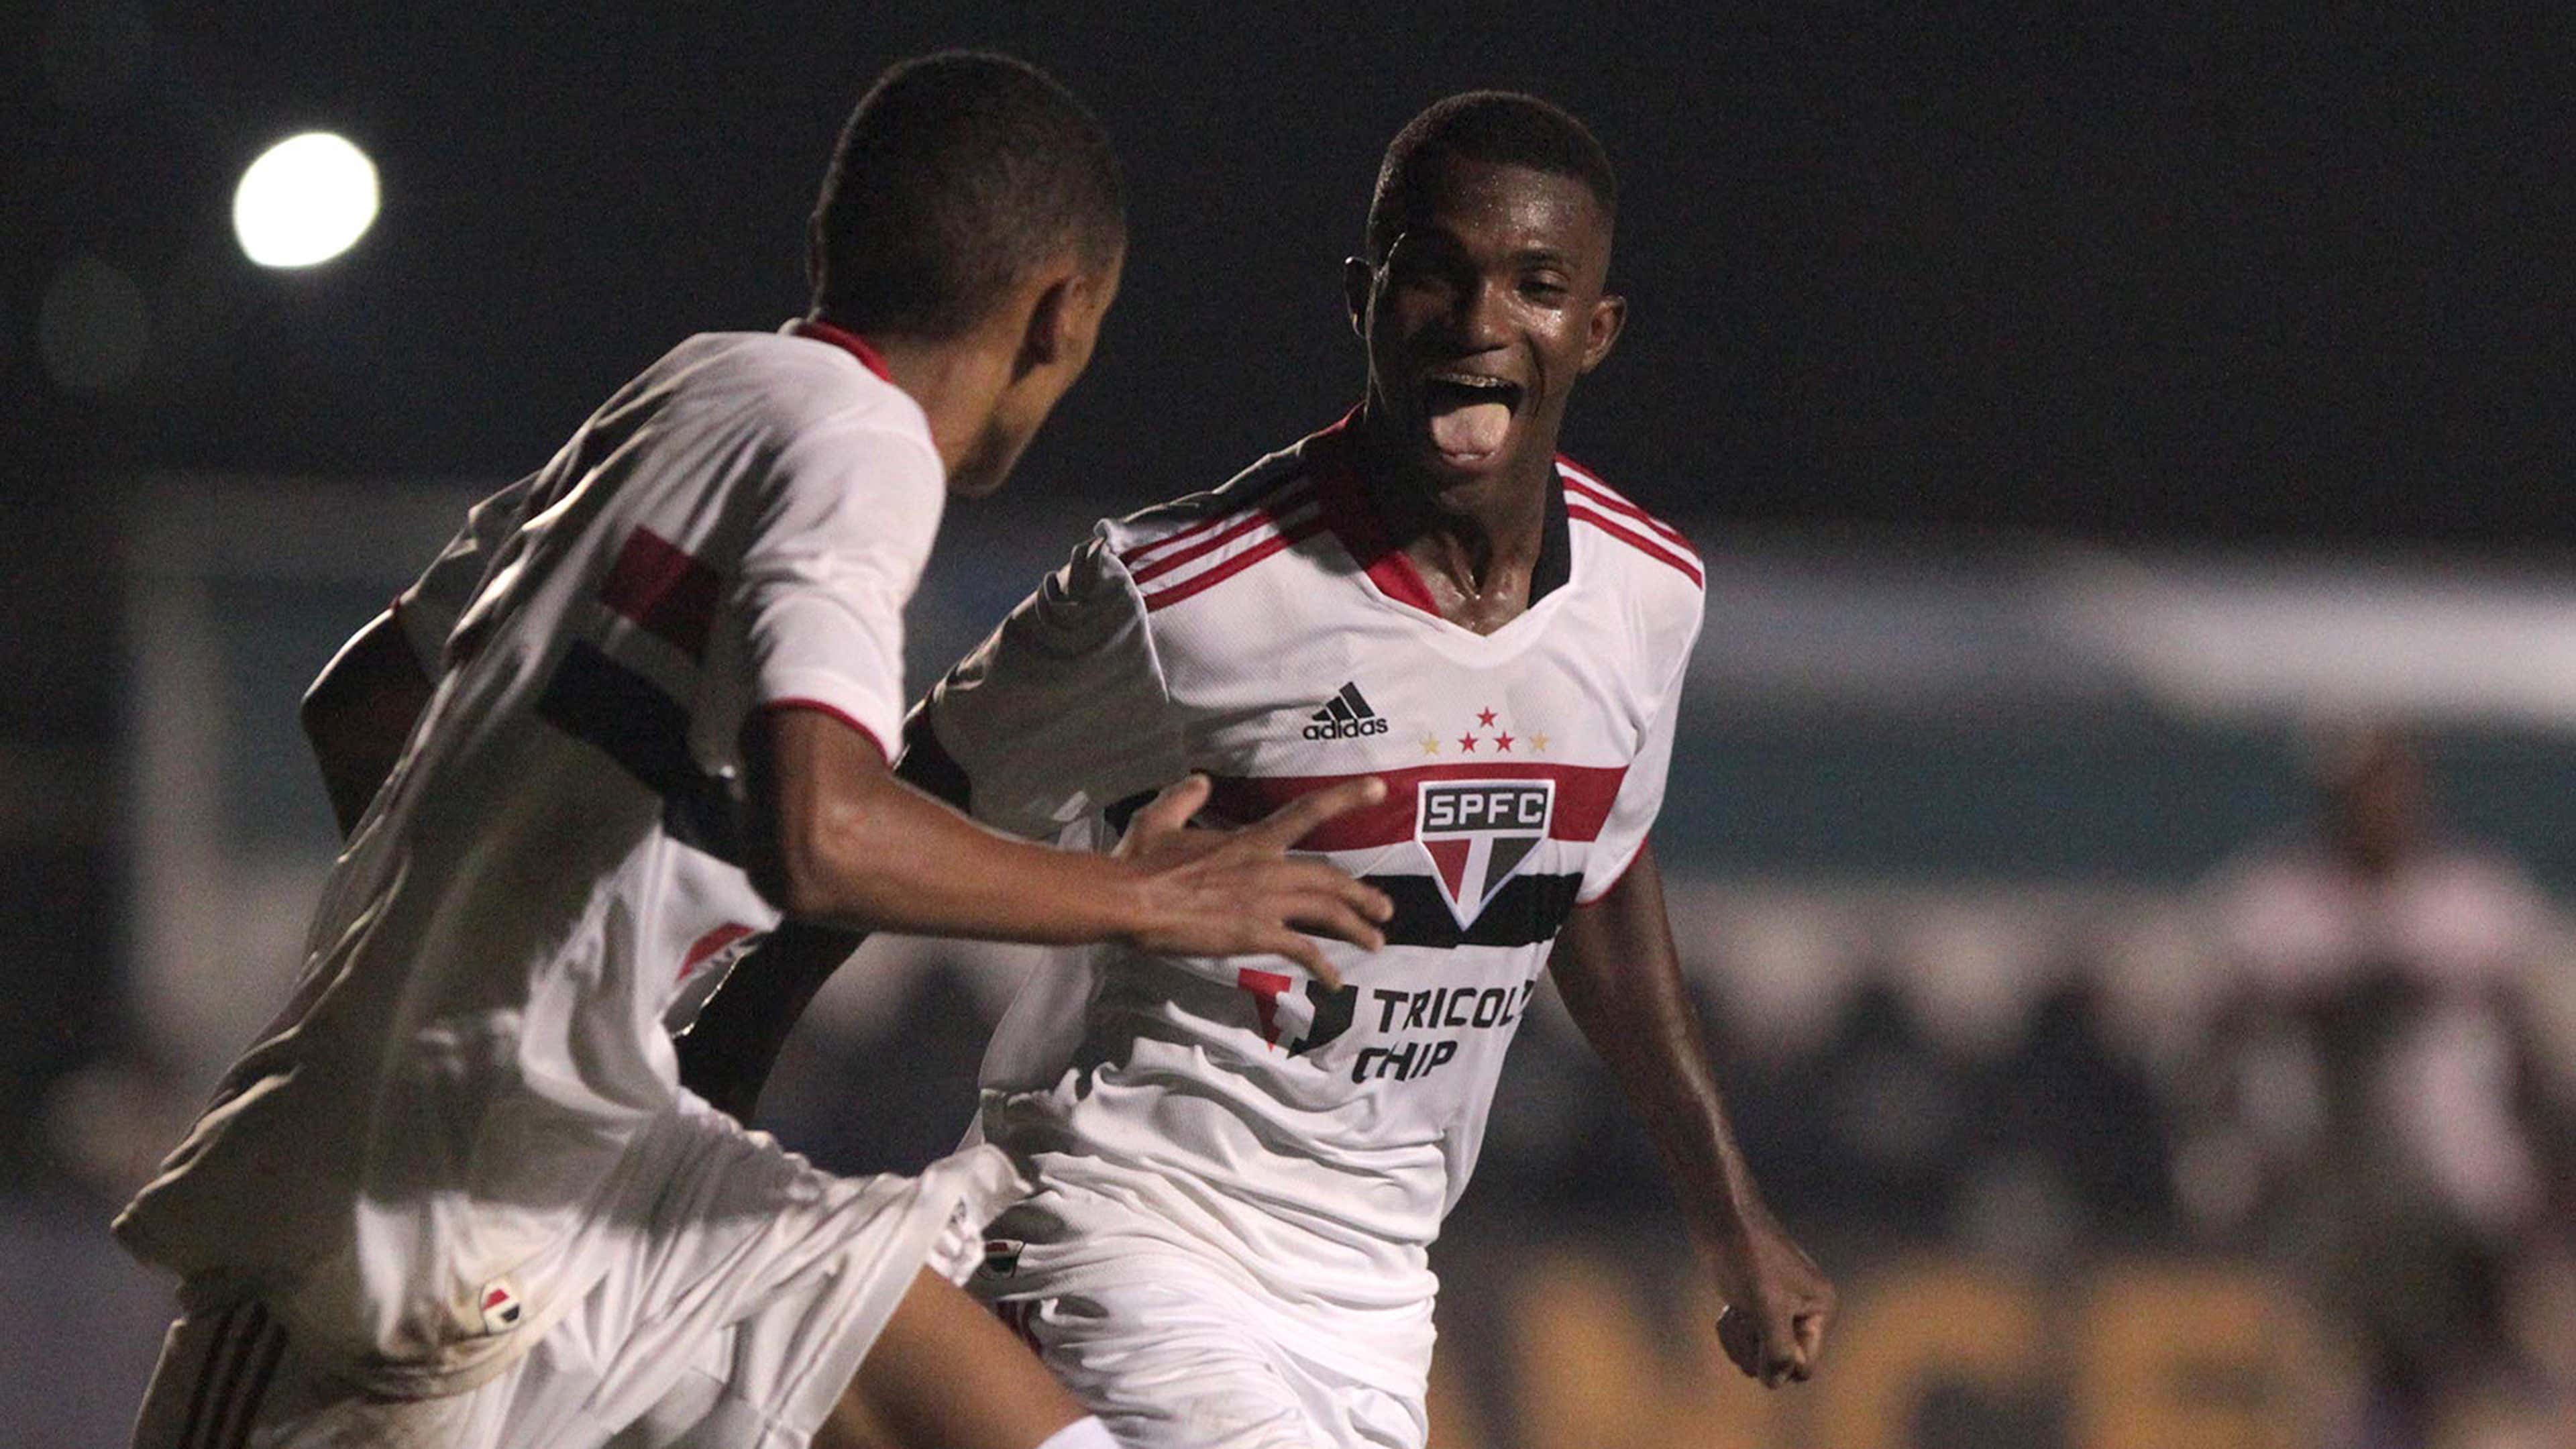 São Paulo 0 x 1 Palmeiras  Copa SP de Futebol Júnior: melhores